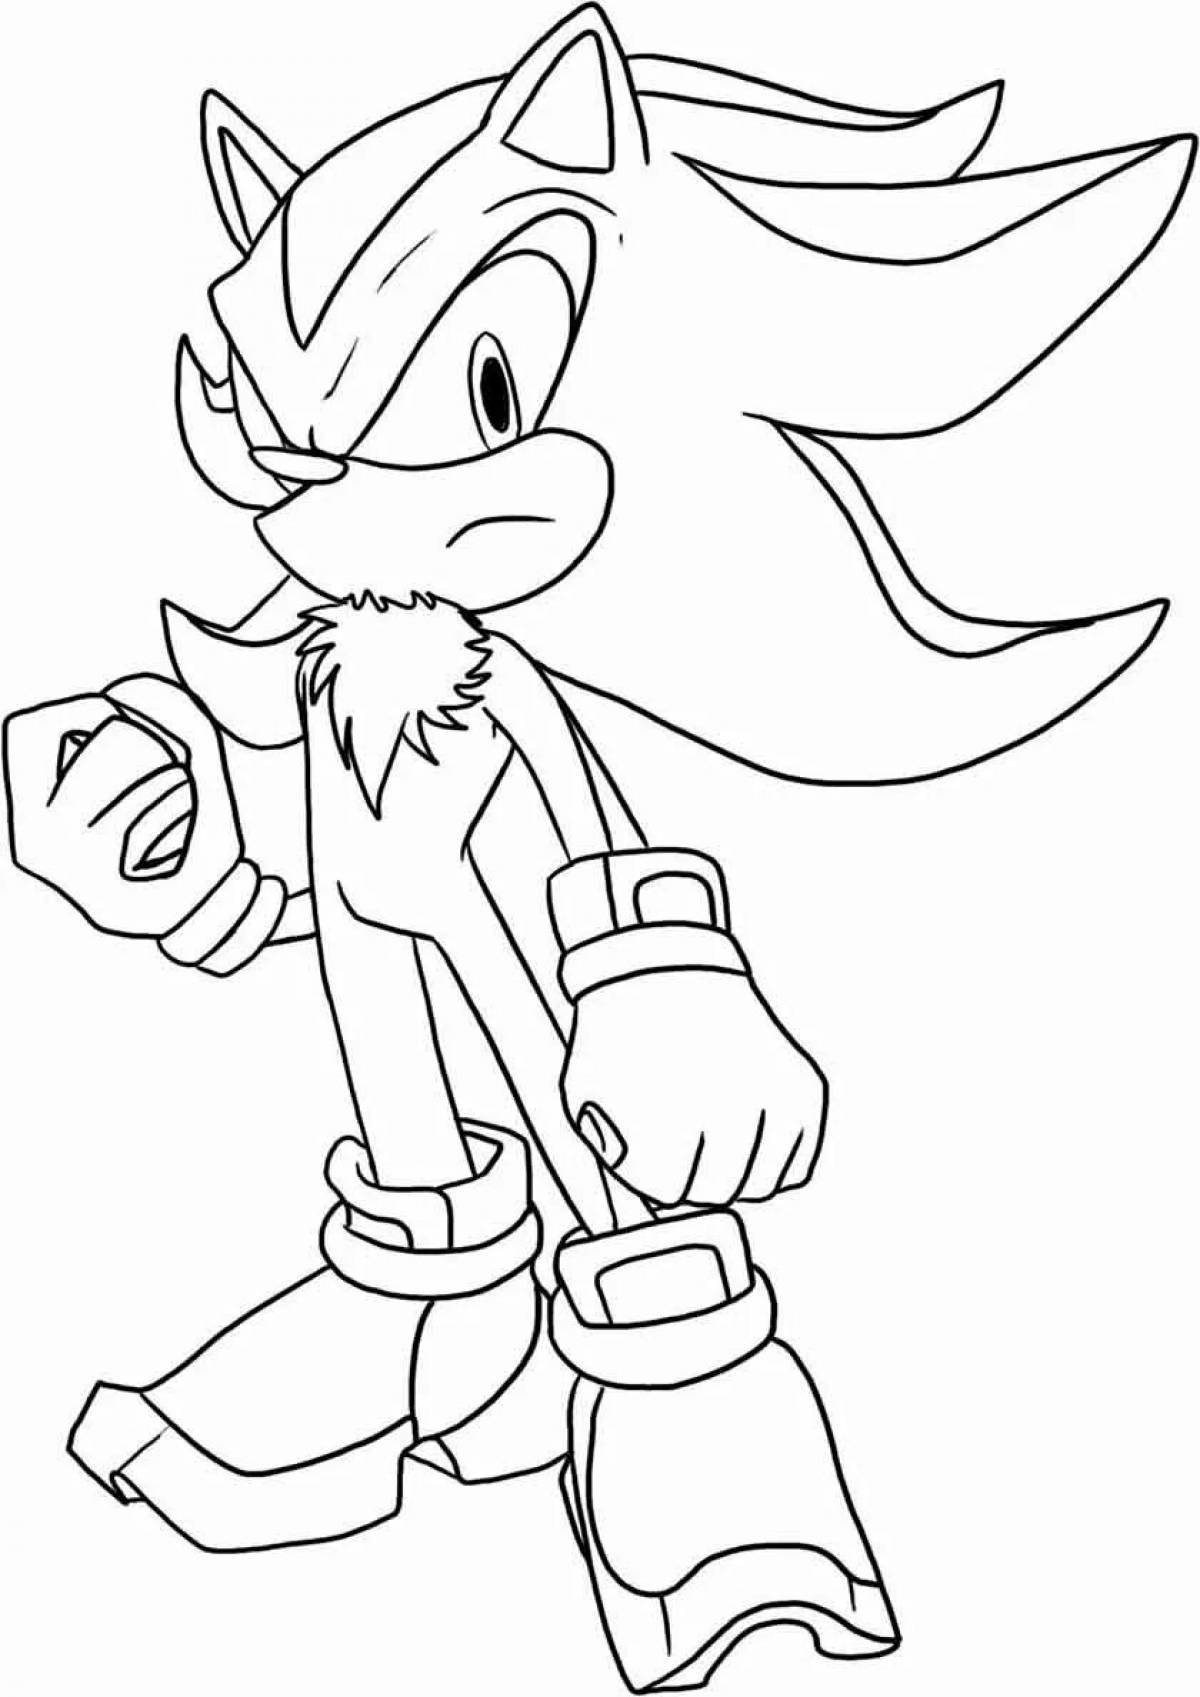 Sonic shredder #4